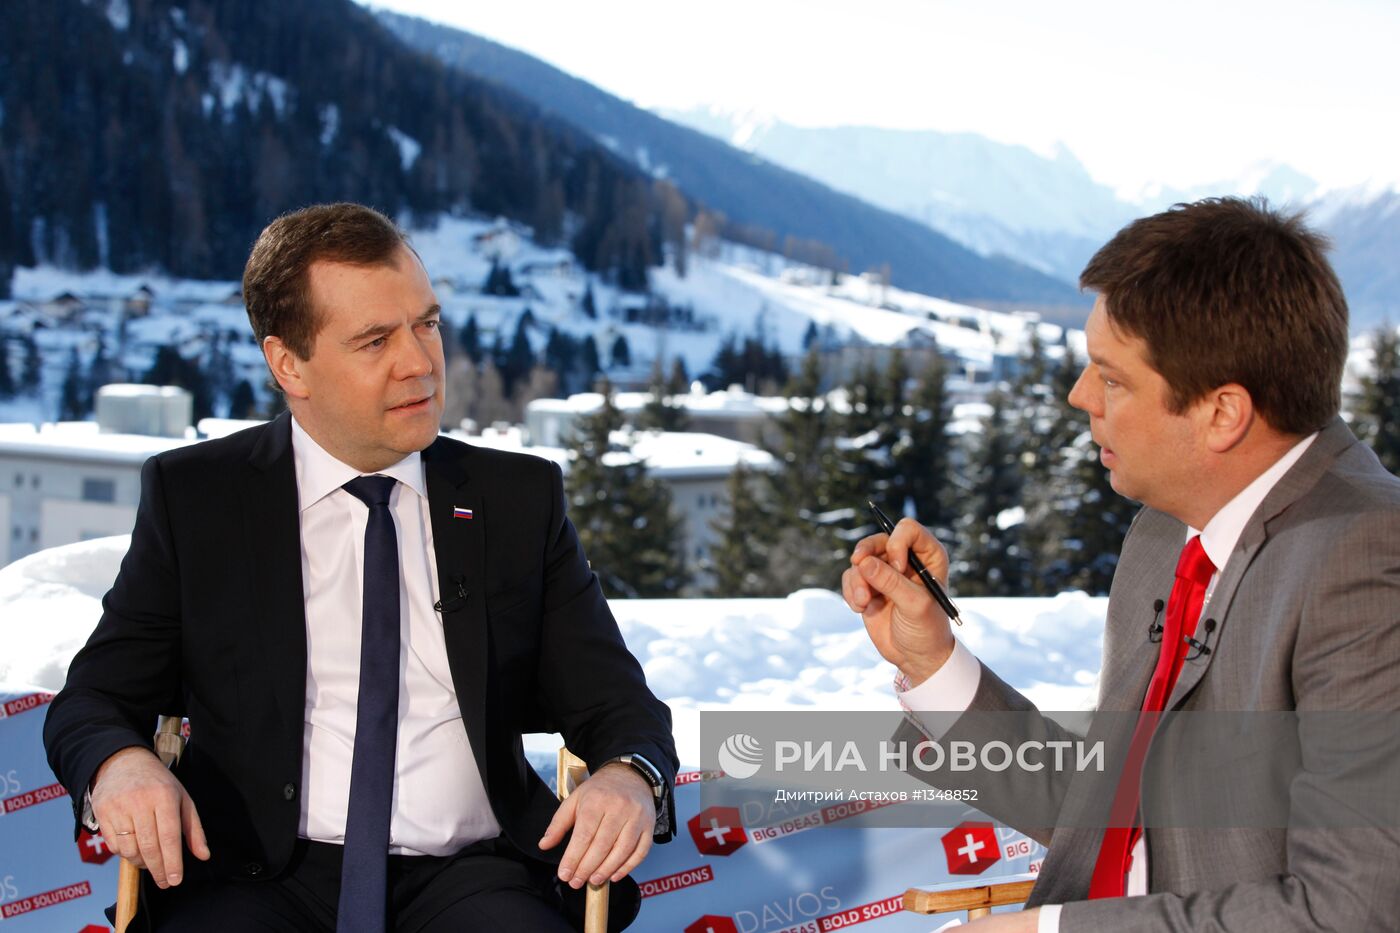 Интервью Д.Медведева телеканалу "Bloomderg TV"